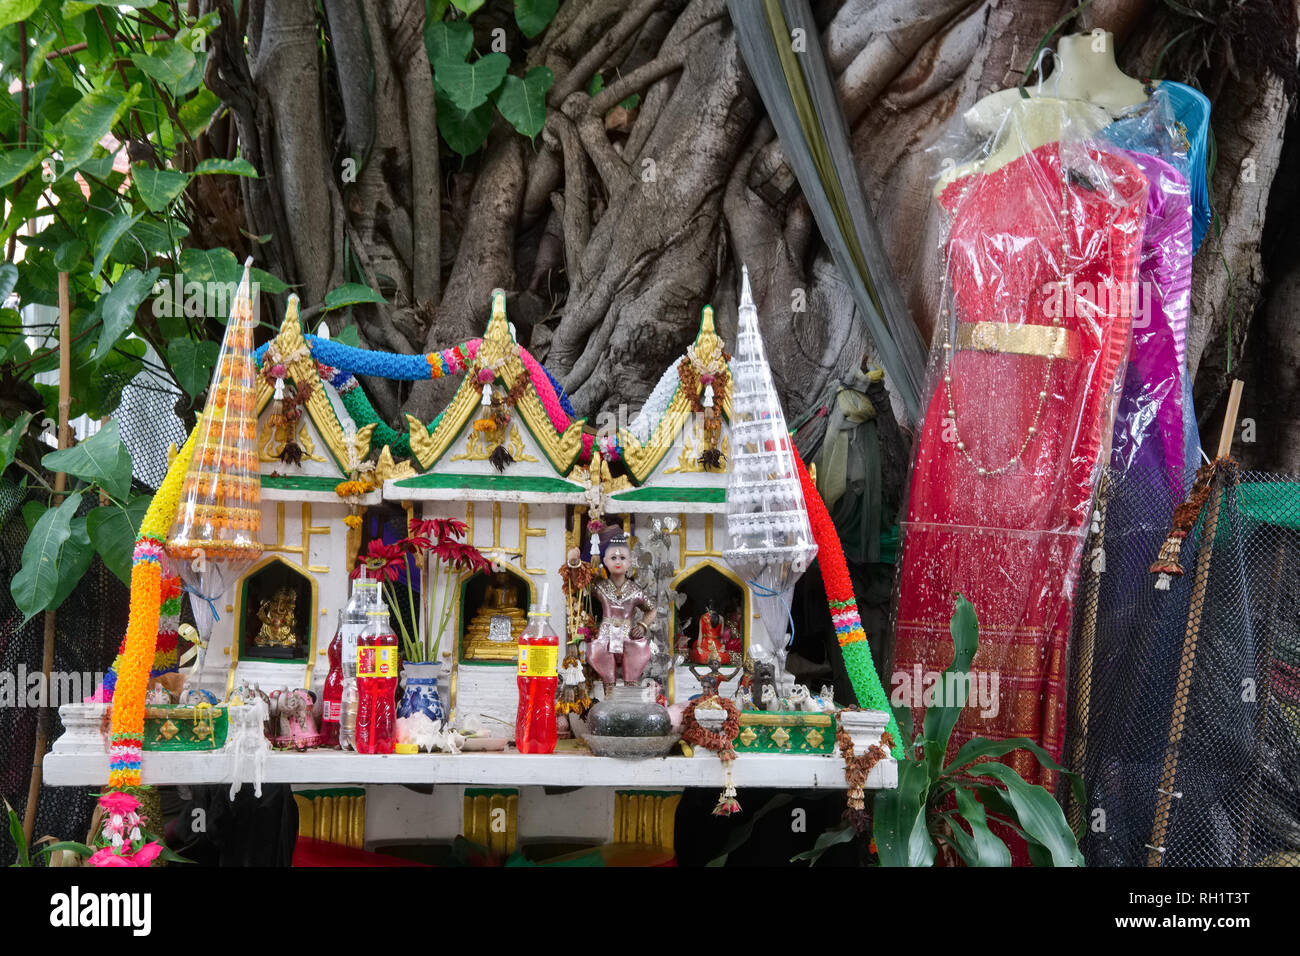 Un árbol de peepal en Bangkok, Tailandia, supuestamente habitado por un espíritu femenino, por lo que la ropa femenina, un espíritu casa y otros objetos rituales son ofrecidos Foto de stock